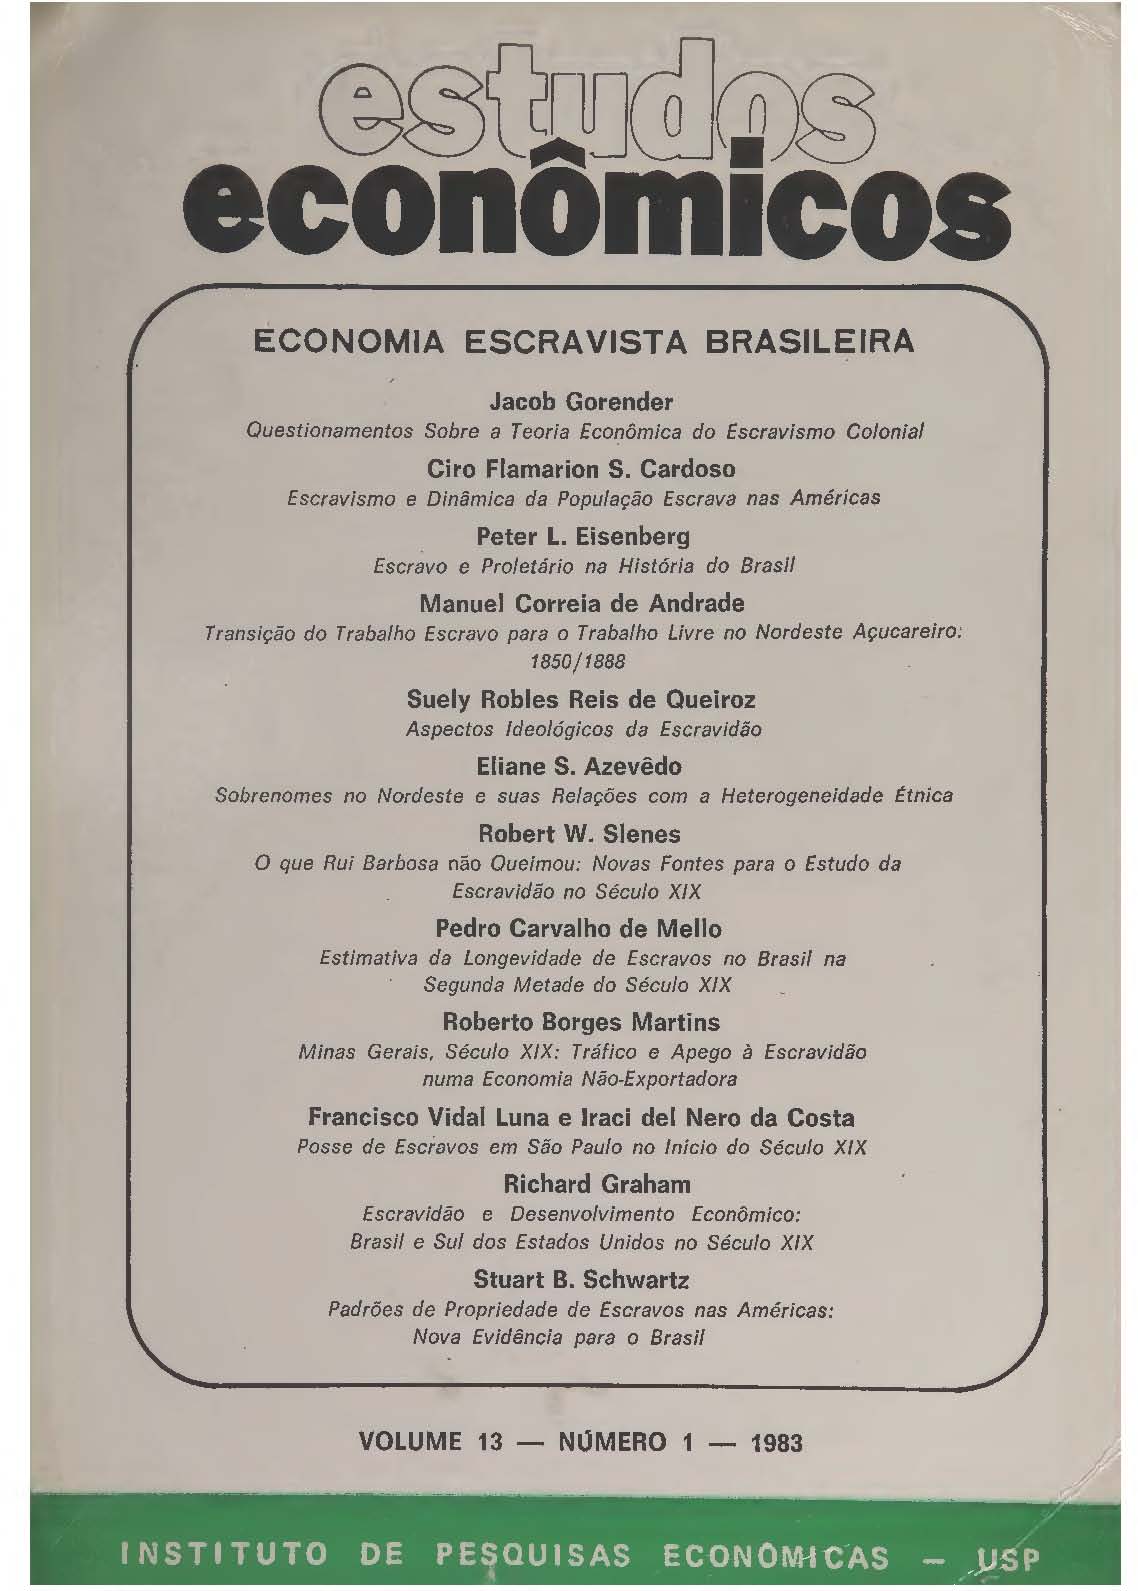 					Visualizar v. 13 n. 1 (1983): Economia Escravista Brasileira
				